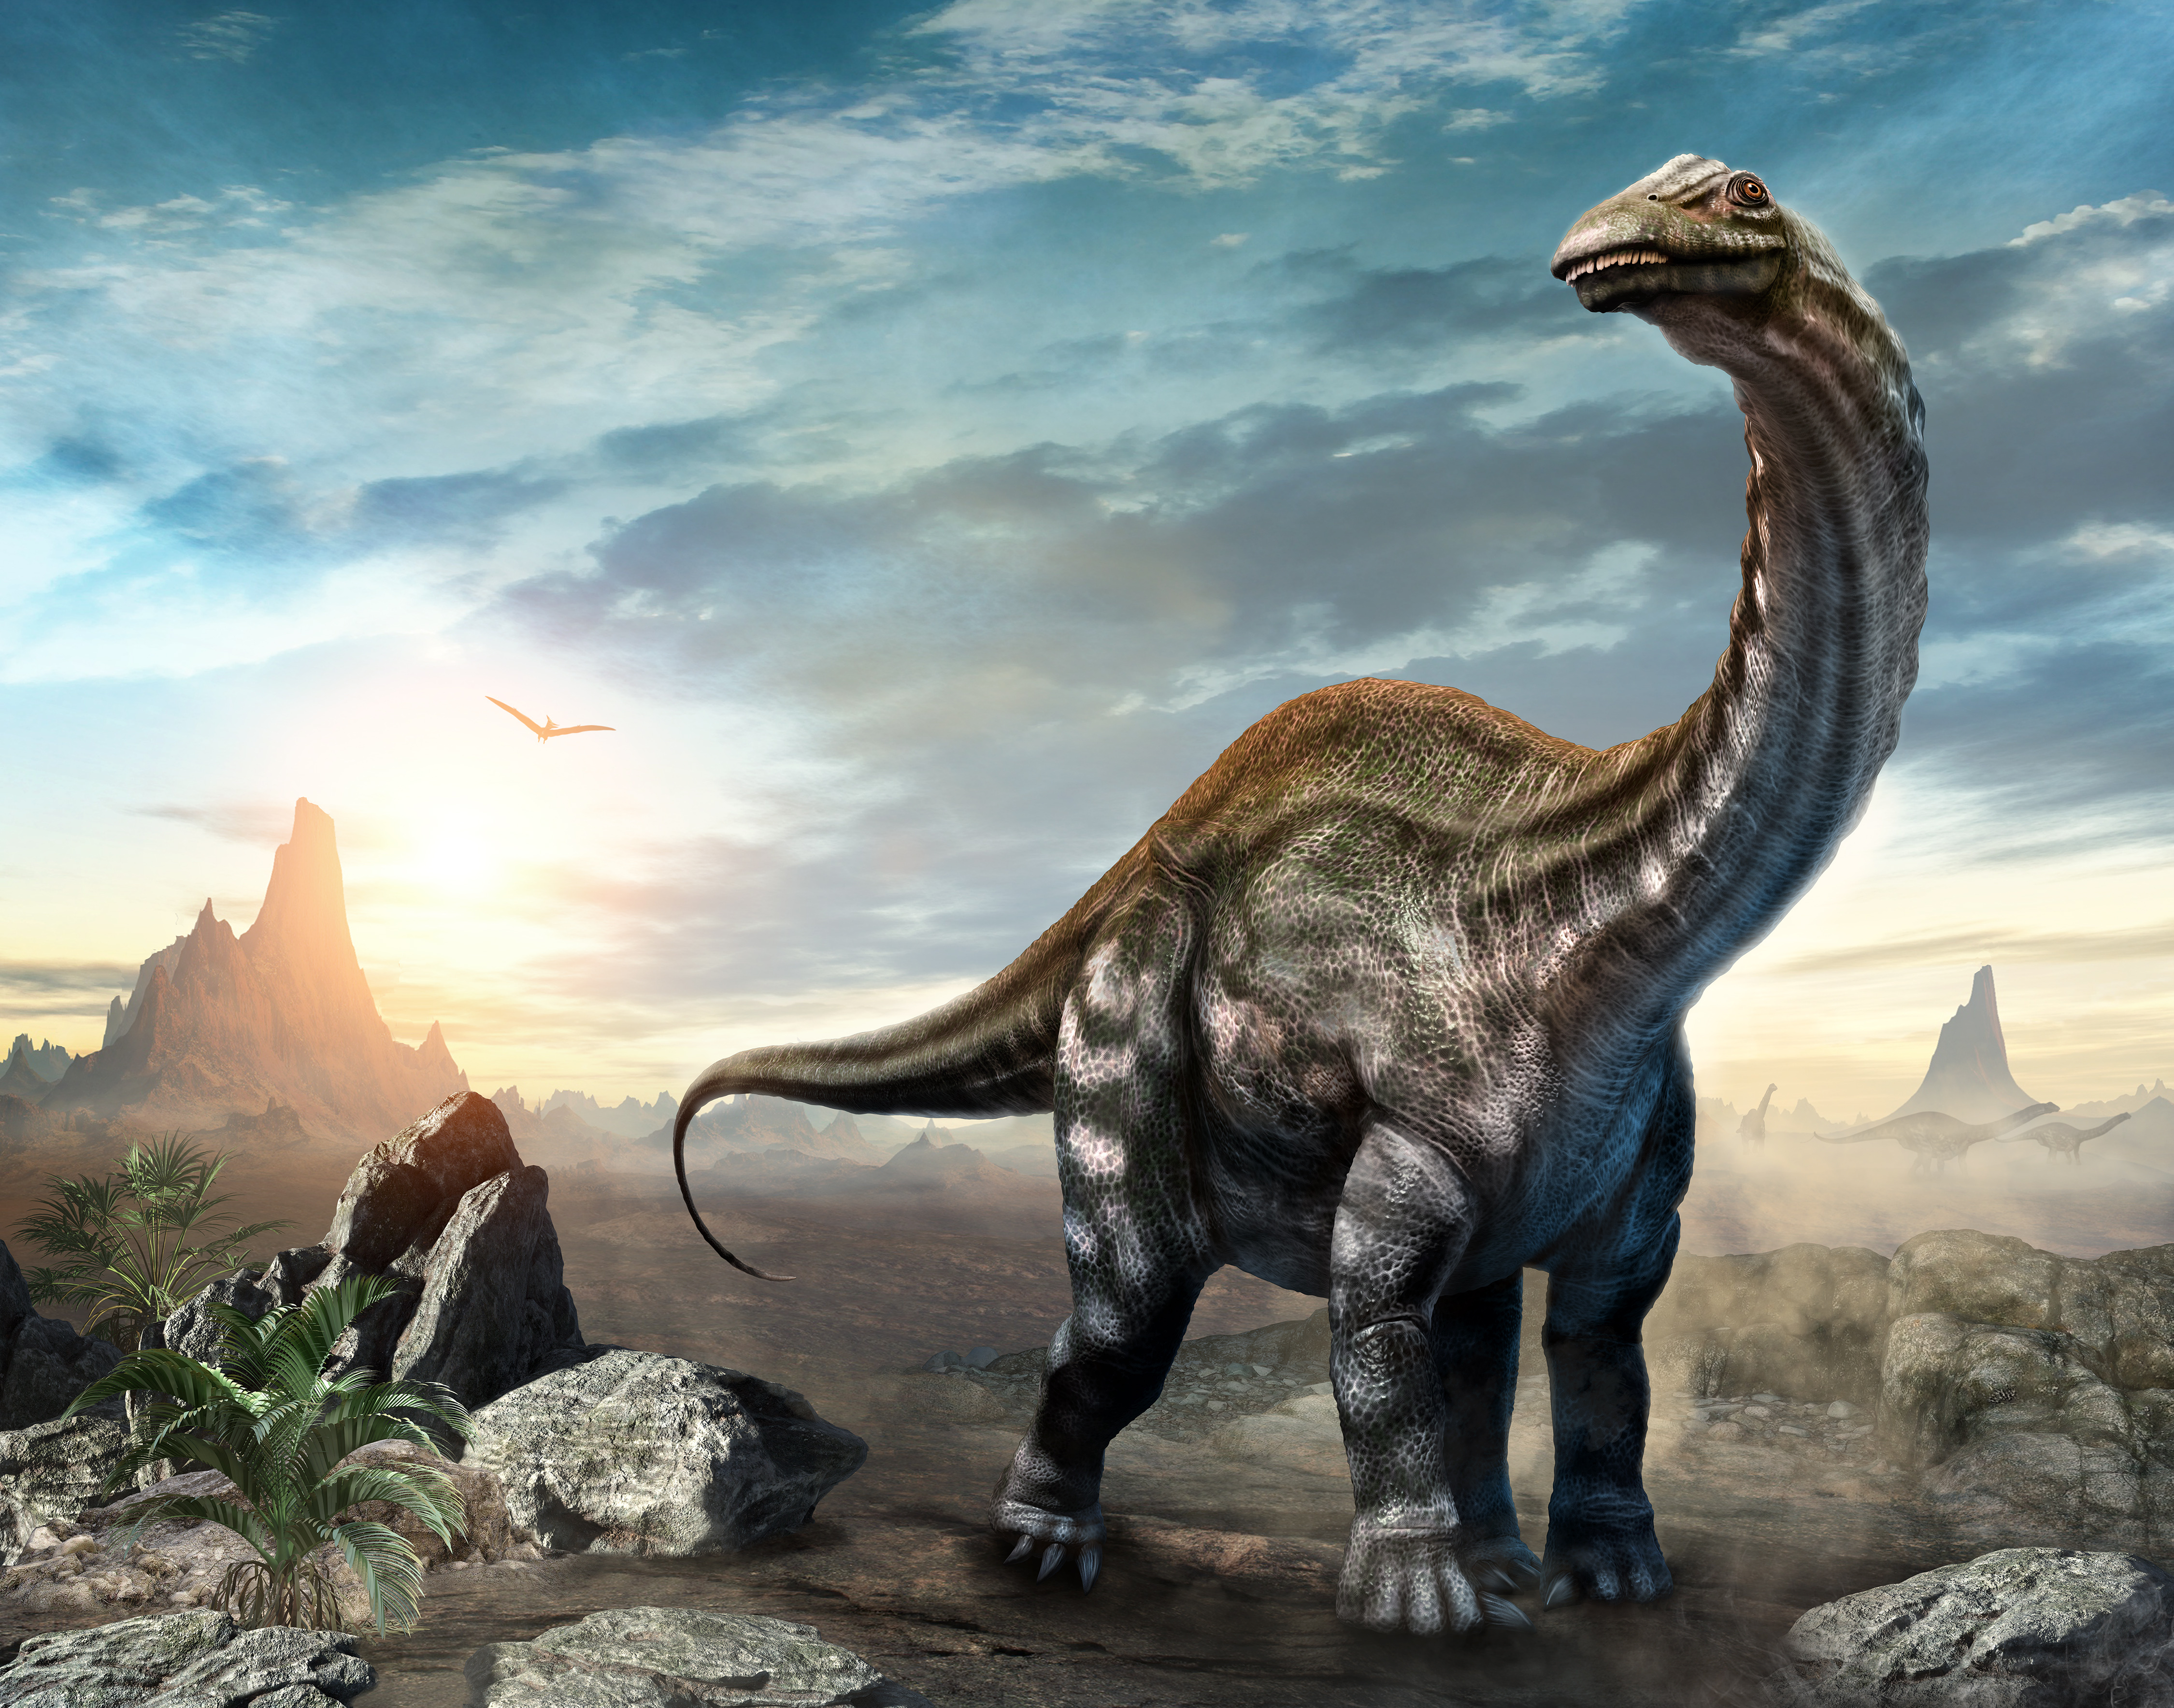 Les dinosaures sont une source sans doute inépuisable de découvertes. © warpaintcobra, Adobe Stock